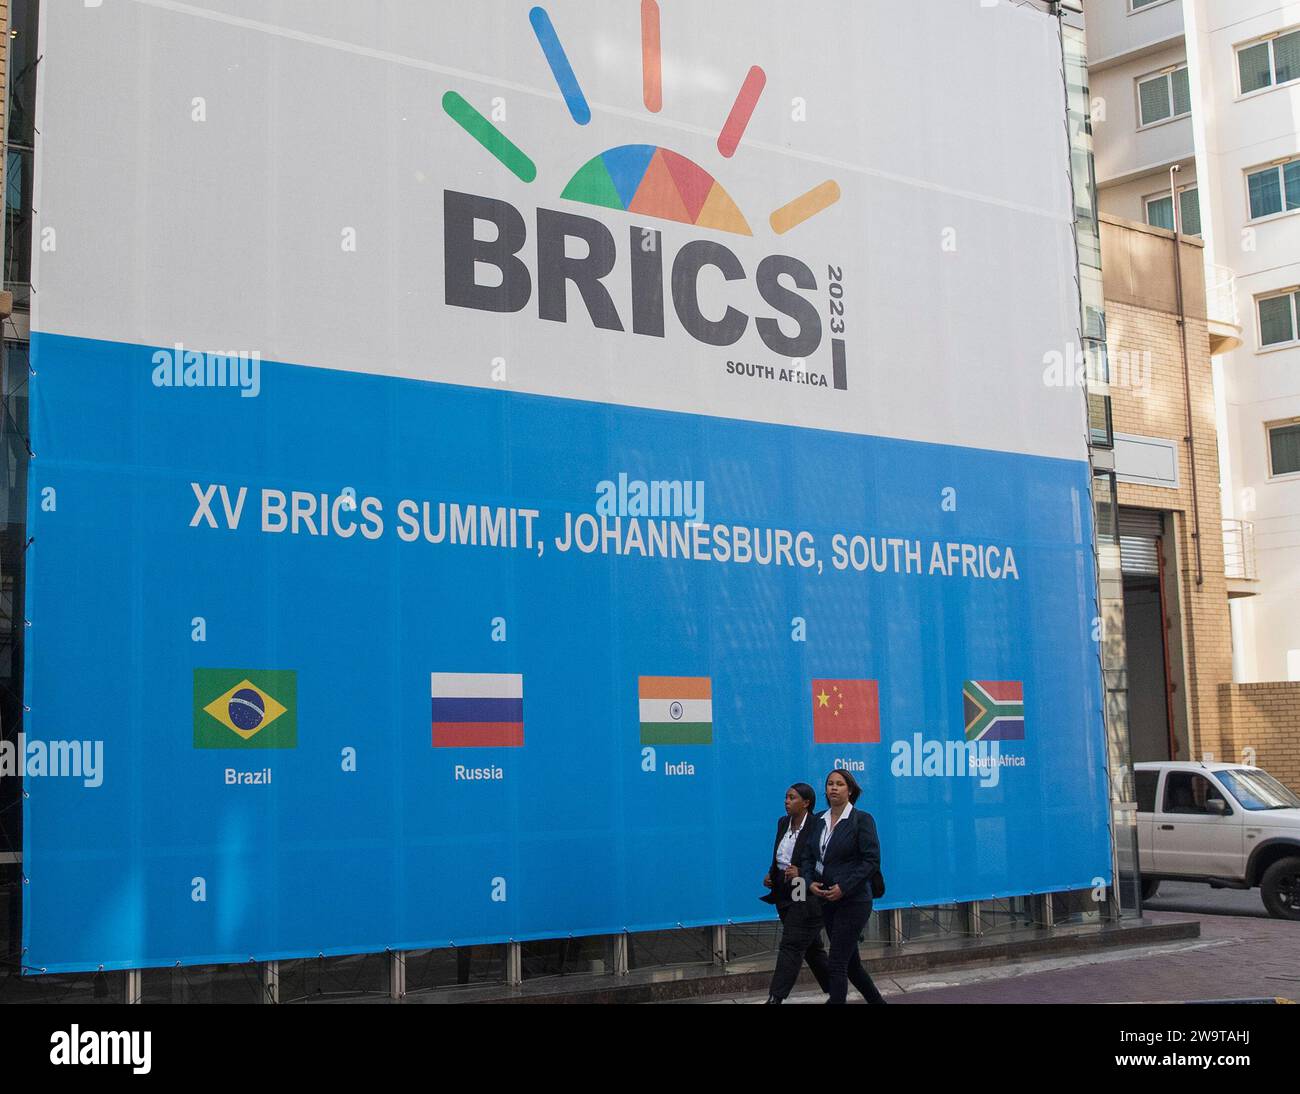 (231230) -- PEKING, 30. Dezember 2023 (Xinhua) -- Menschen laufen in der Nähe des Sandton Convention Center, dem Veranstaltungsort des 15. BRICS Summit in Johannesburg, Südafrika, 21. August 2023. Die 10 wichtigsten Nachrichten der Welt im Jahr 2023 5. Am 24. August wurde der BRICS-Kooperationsmechanismus Zeuge einer historischen Expansion, als Länder wie Saudi Arabien, Ägypten, die Vereinigten Arabischen Emirate, Iran und Äthiopien eingeladen wurden, der BRICS-Familie beizutreten. Am 9. September wurde die Afrikanische Union eingeladen, offiziell Mitglied der G20 zu werden. Derzeit ist die Stärke der Entwicklungsländer c Stockfoto